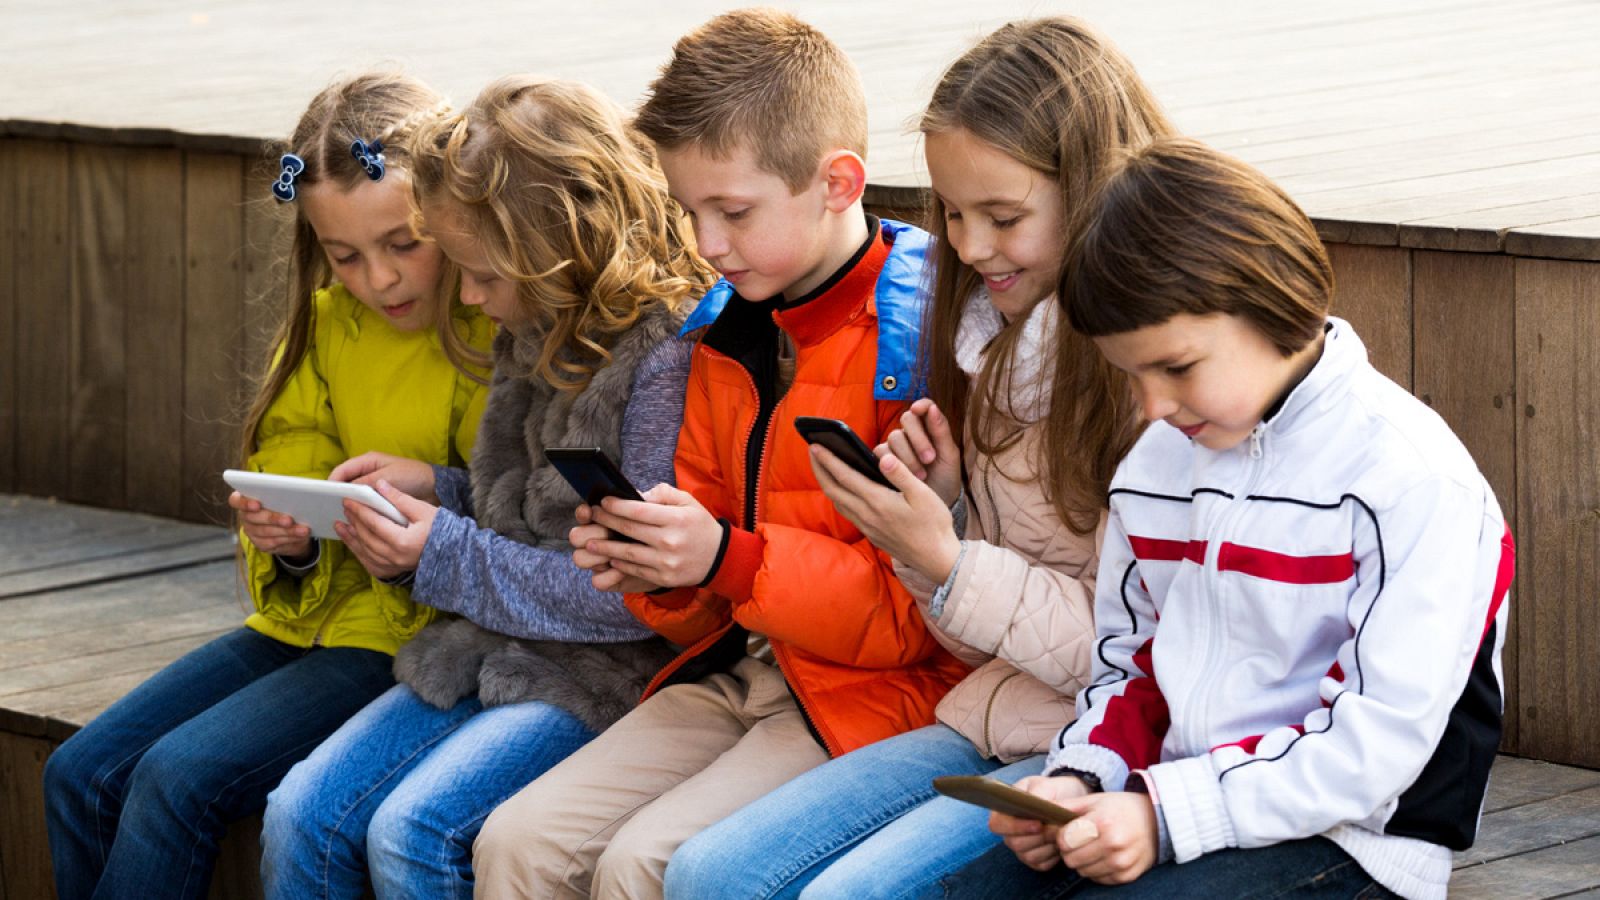 Entre los menores, el dispositivo más utilizado para conectarse a internet es el teléfono móvil.